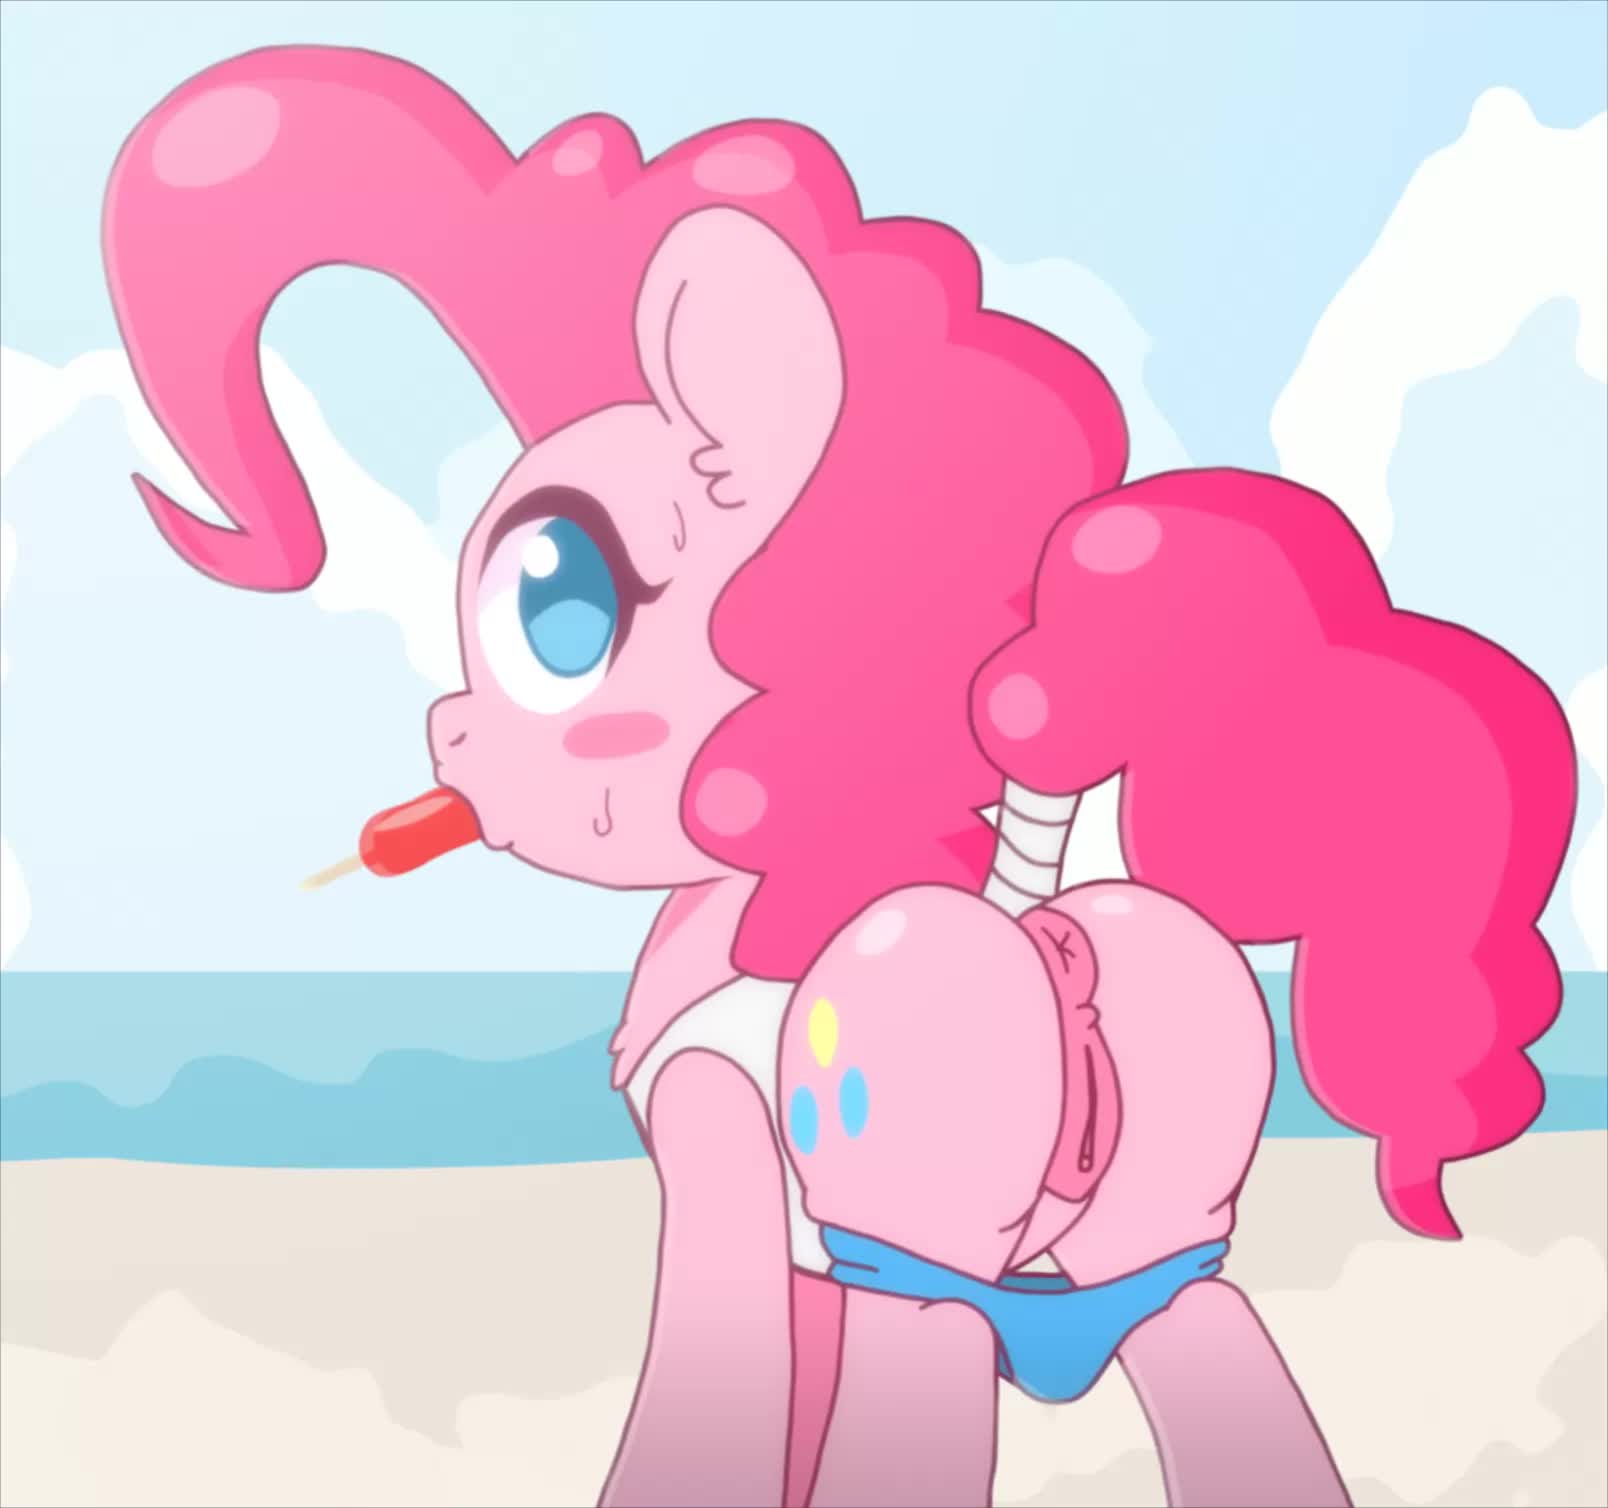 Animated My_Little_Pony_Friendship_Is_Magic Pinkie_Pie omegaozone webm // 1608x1508 // 333.1KB // webm